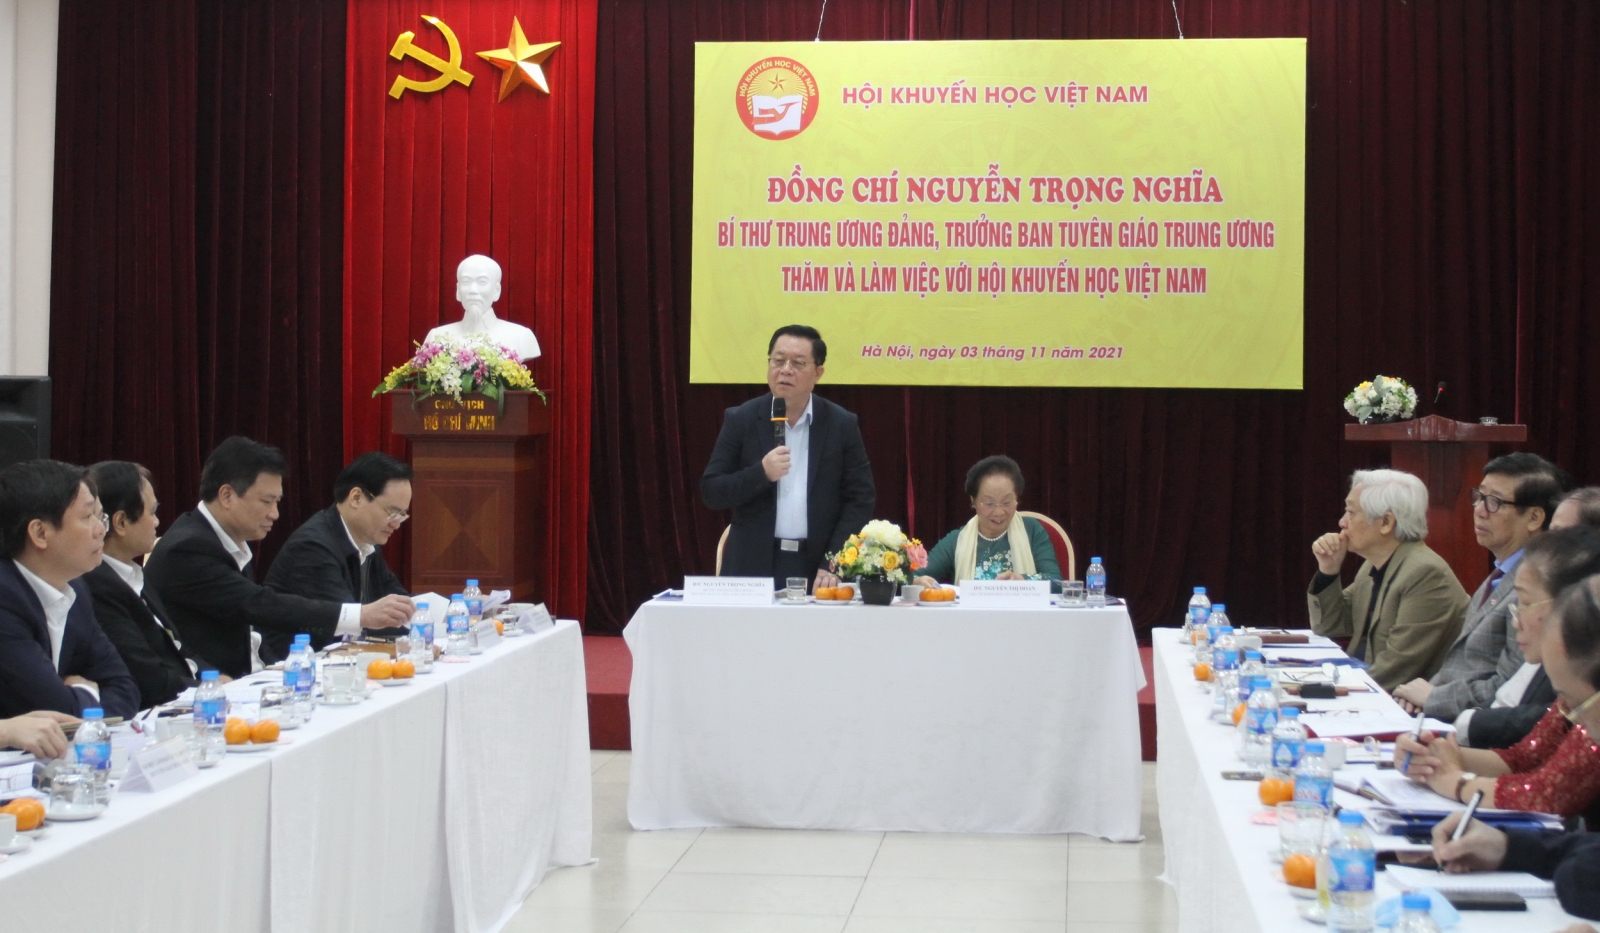 Hội khuyến học Việt Nam đồng hành cùng Bộ Giáo dục và Đào tạo trong sự nghiệp đổi mới giáo dục